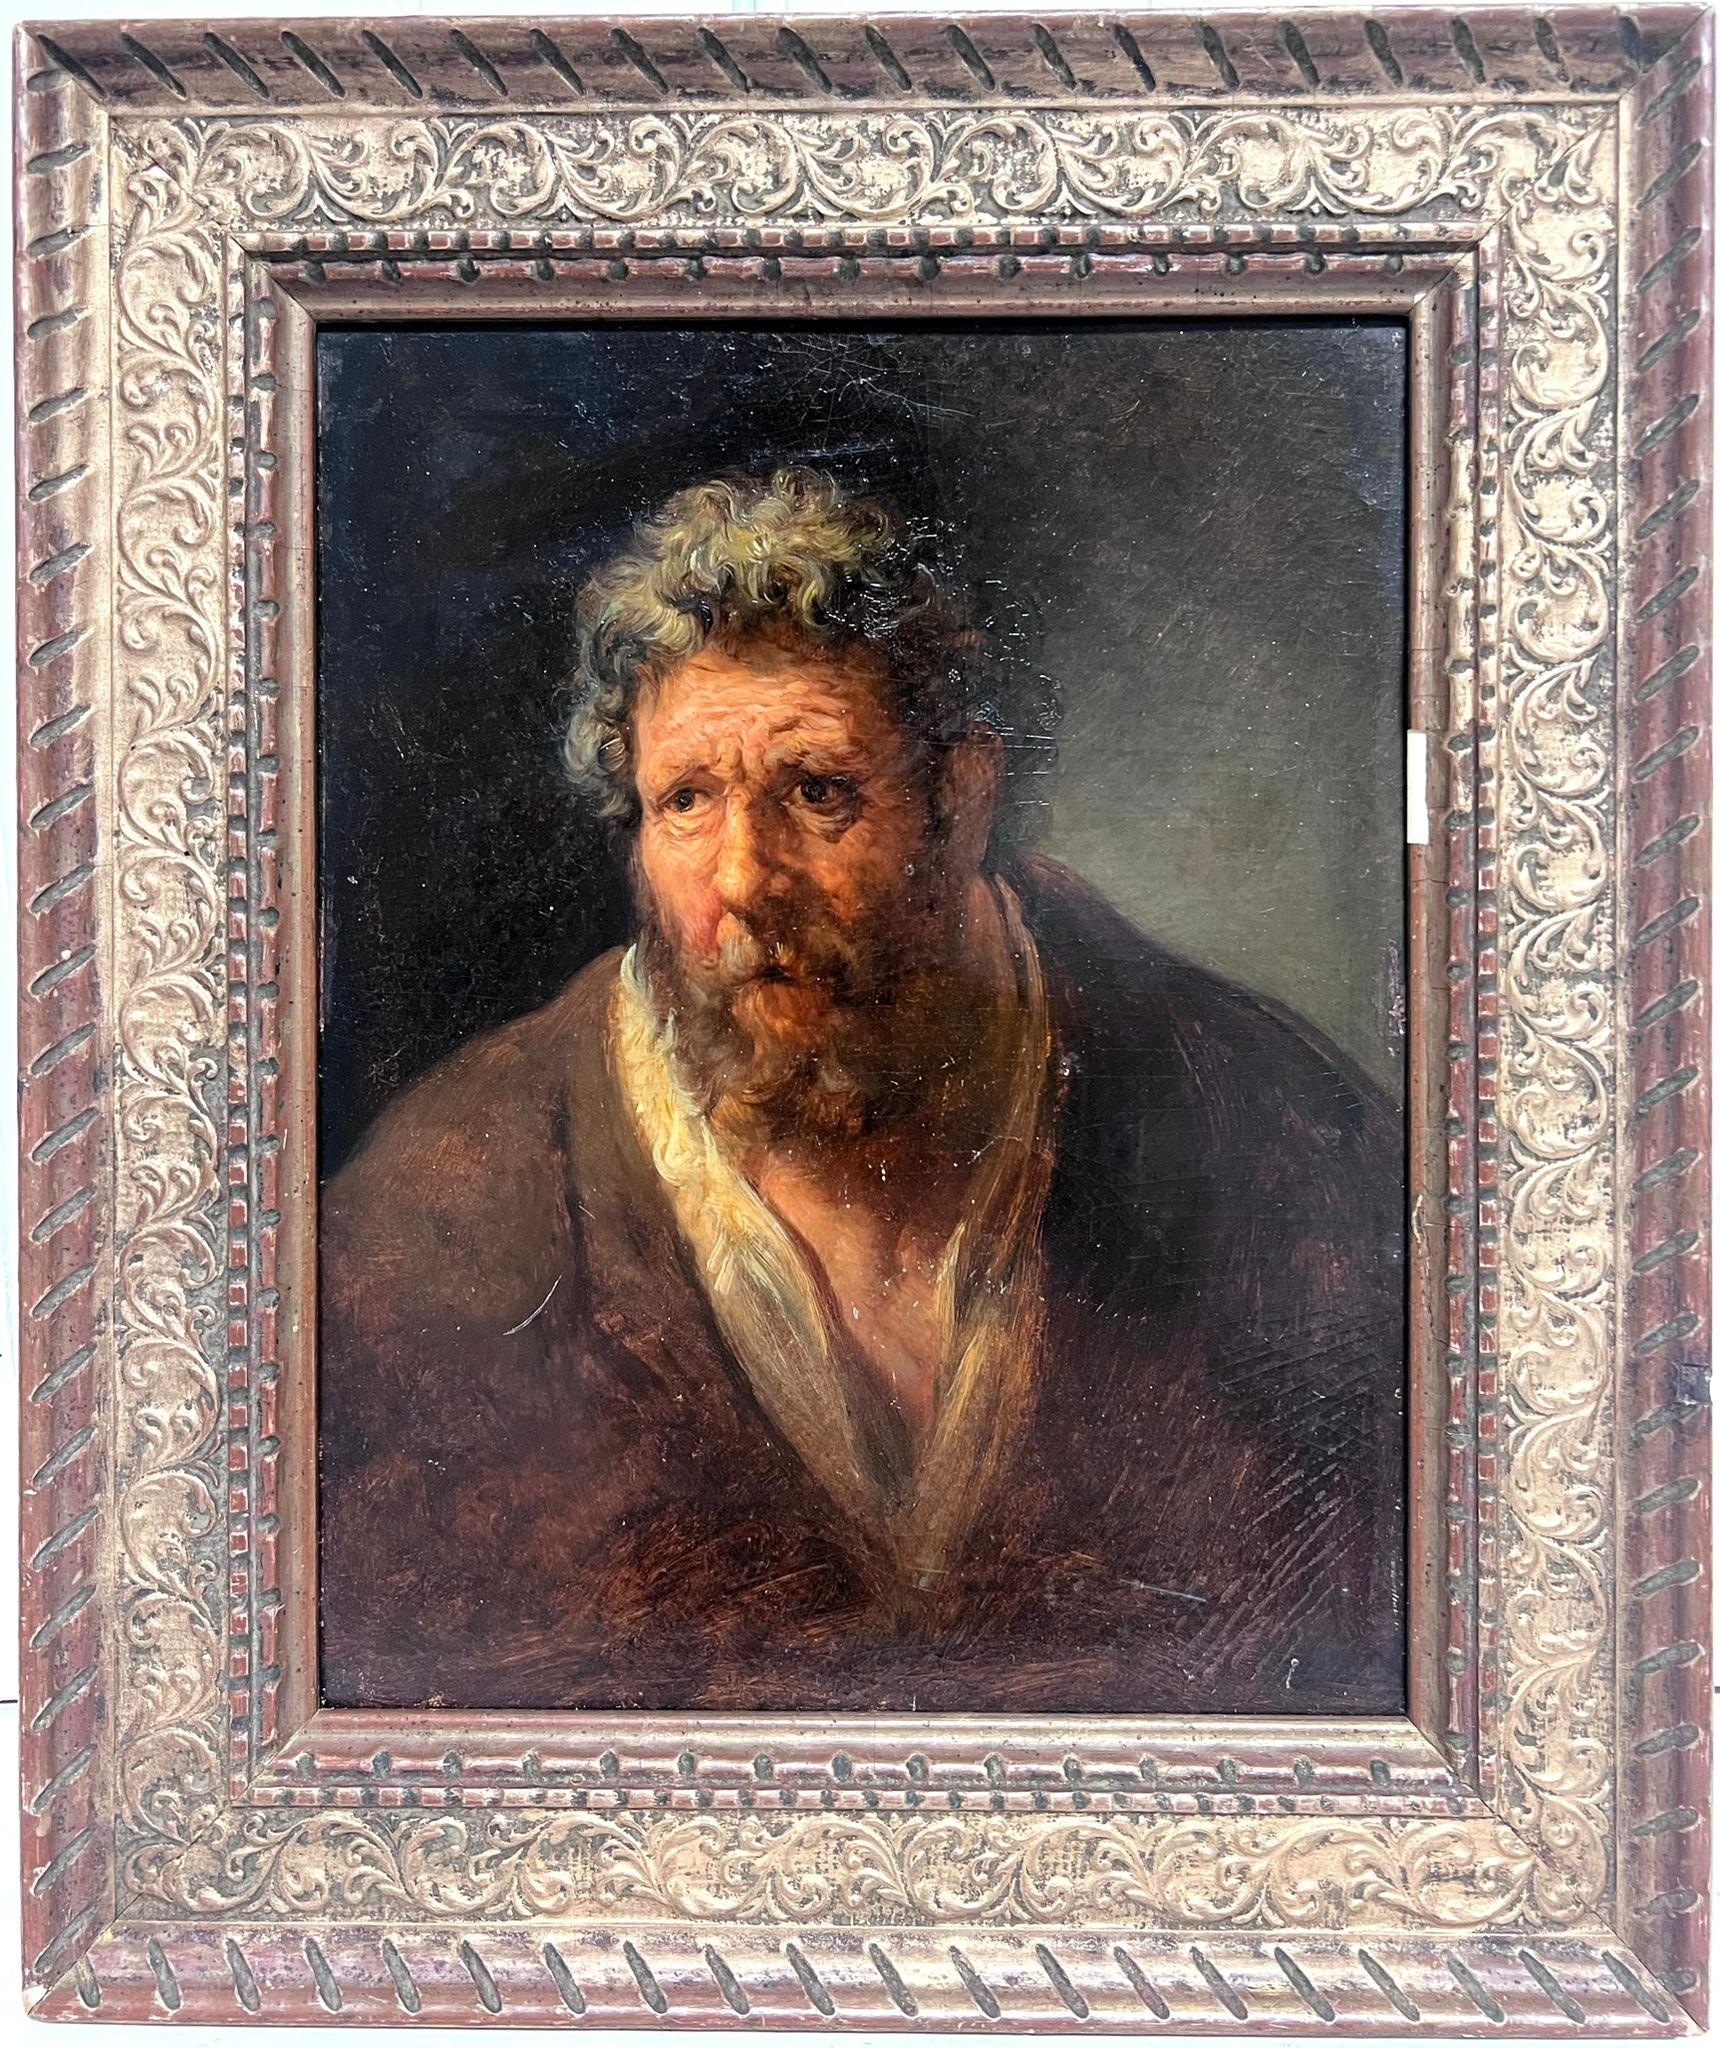 Figurative Painting Italian 19th Century - Peinture à l'huile italienne du début des années 1800 Portrait d'un homme barbu, Saint Peter Apostle